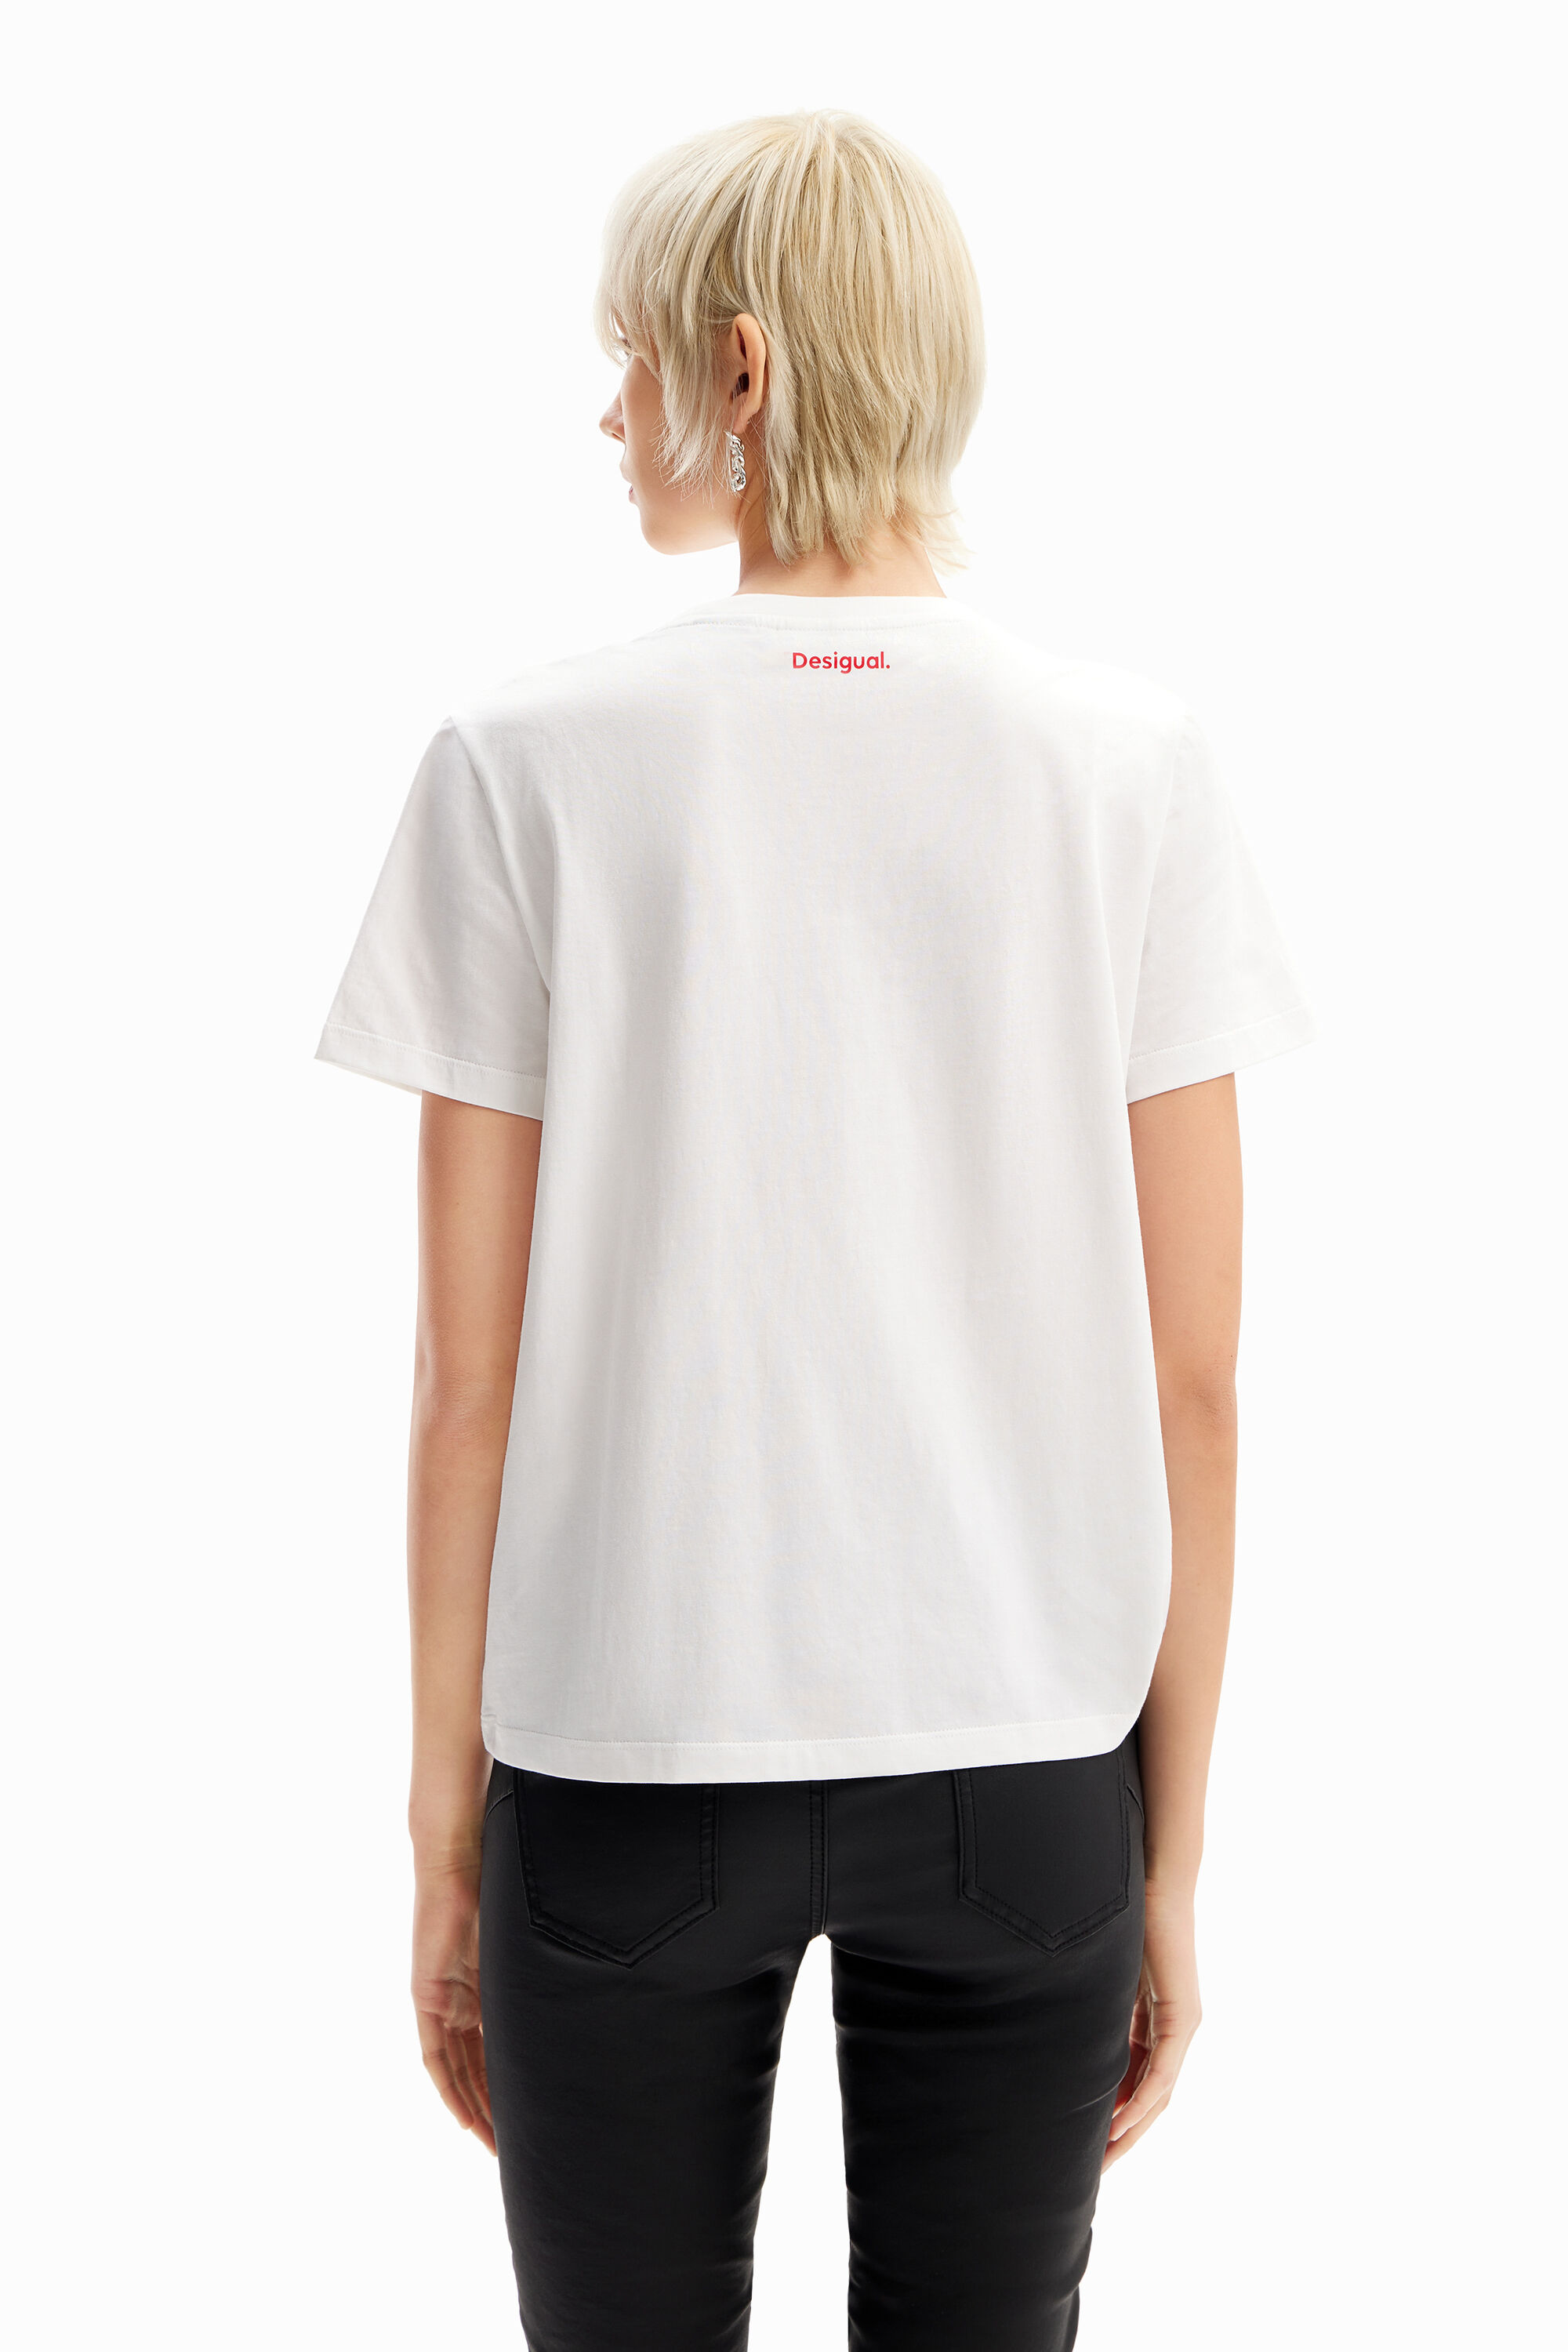 Desigual ROLLING STONES multicolour logo cotton T-shirt SS2024